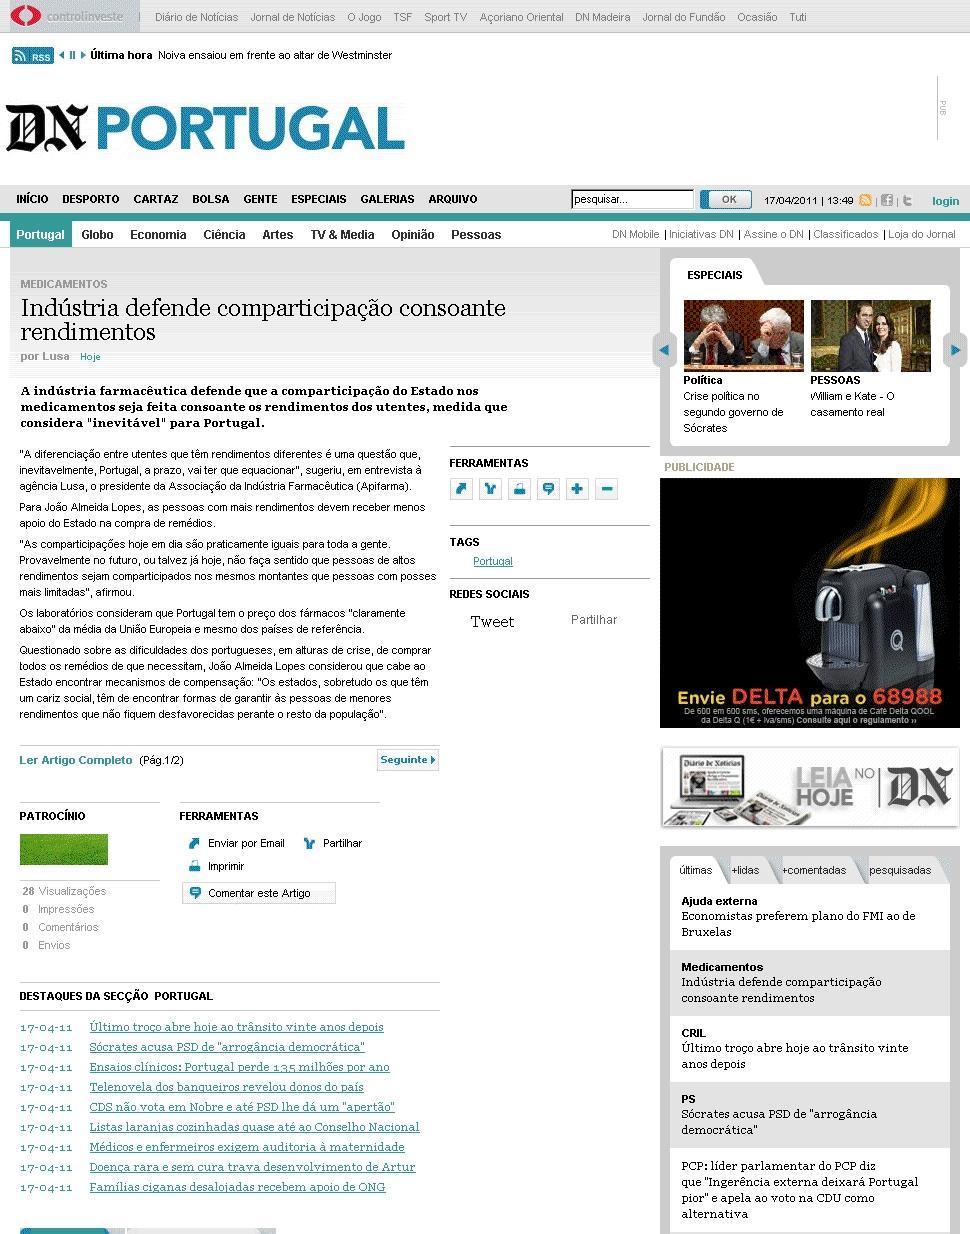 Data: 2011/04/17 Diário de Notícias Título: Indústria defende comparticipação consoante